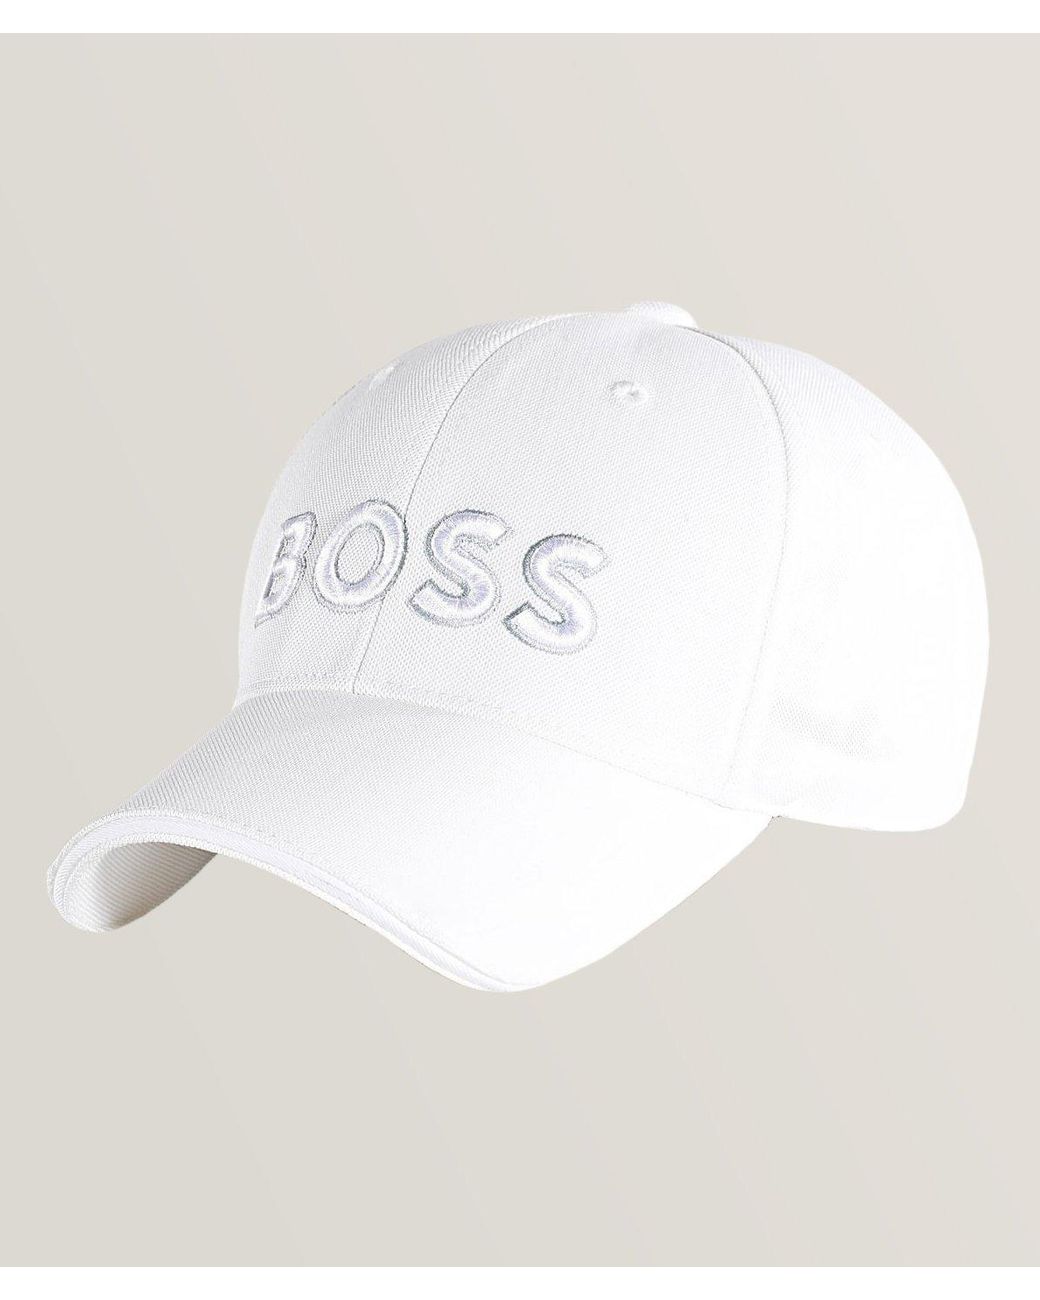 BOSS by HUGO BOSS Tonal 3d Logo Technical Baseball Cap in White for Men ...